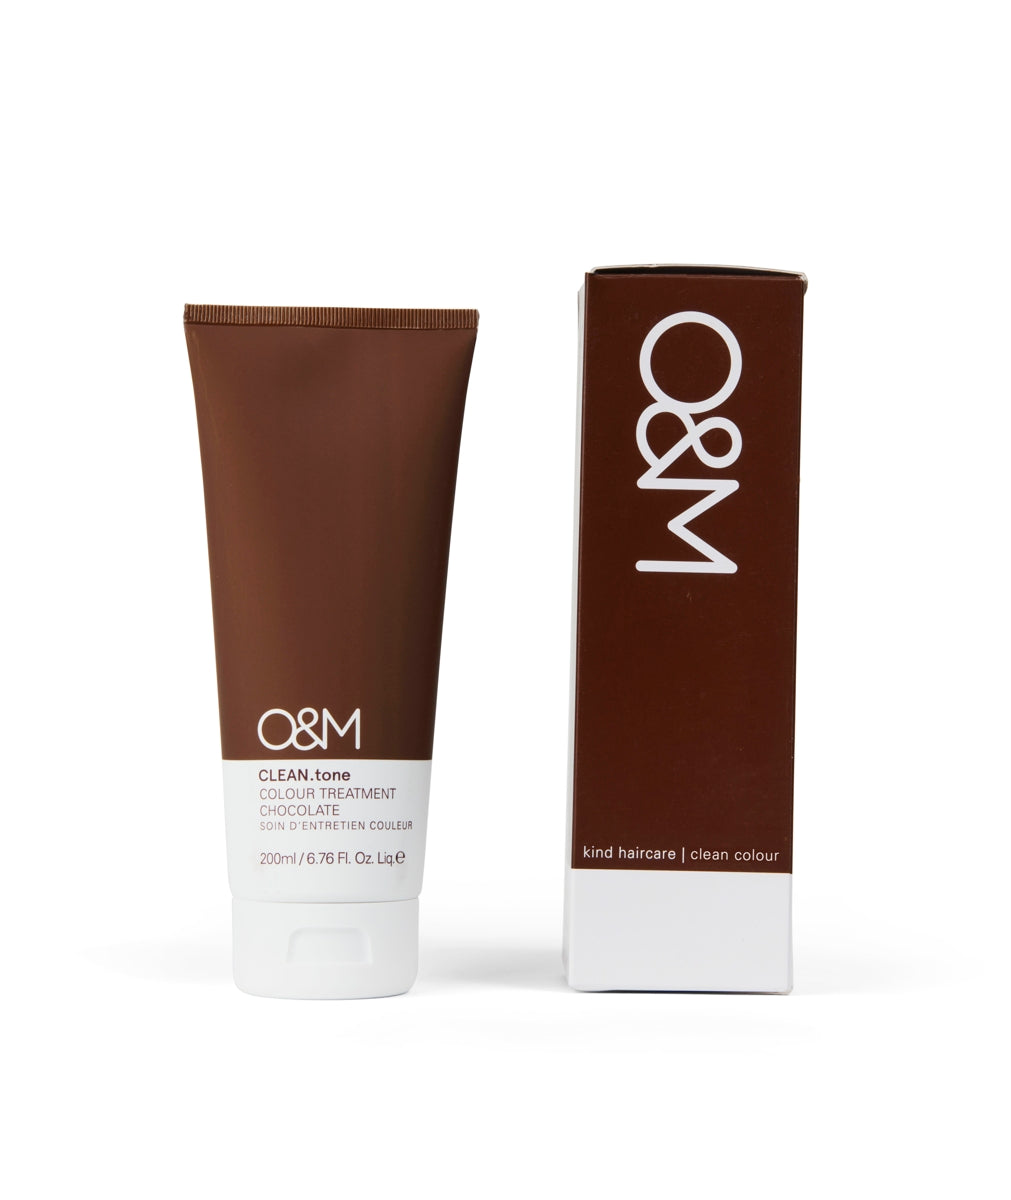 O&M CLEAN.tone Colour Treatment CHOCOLATE 200ml